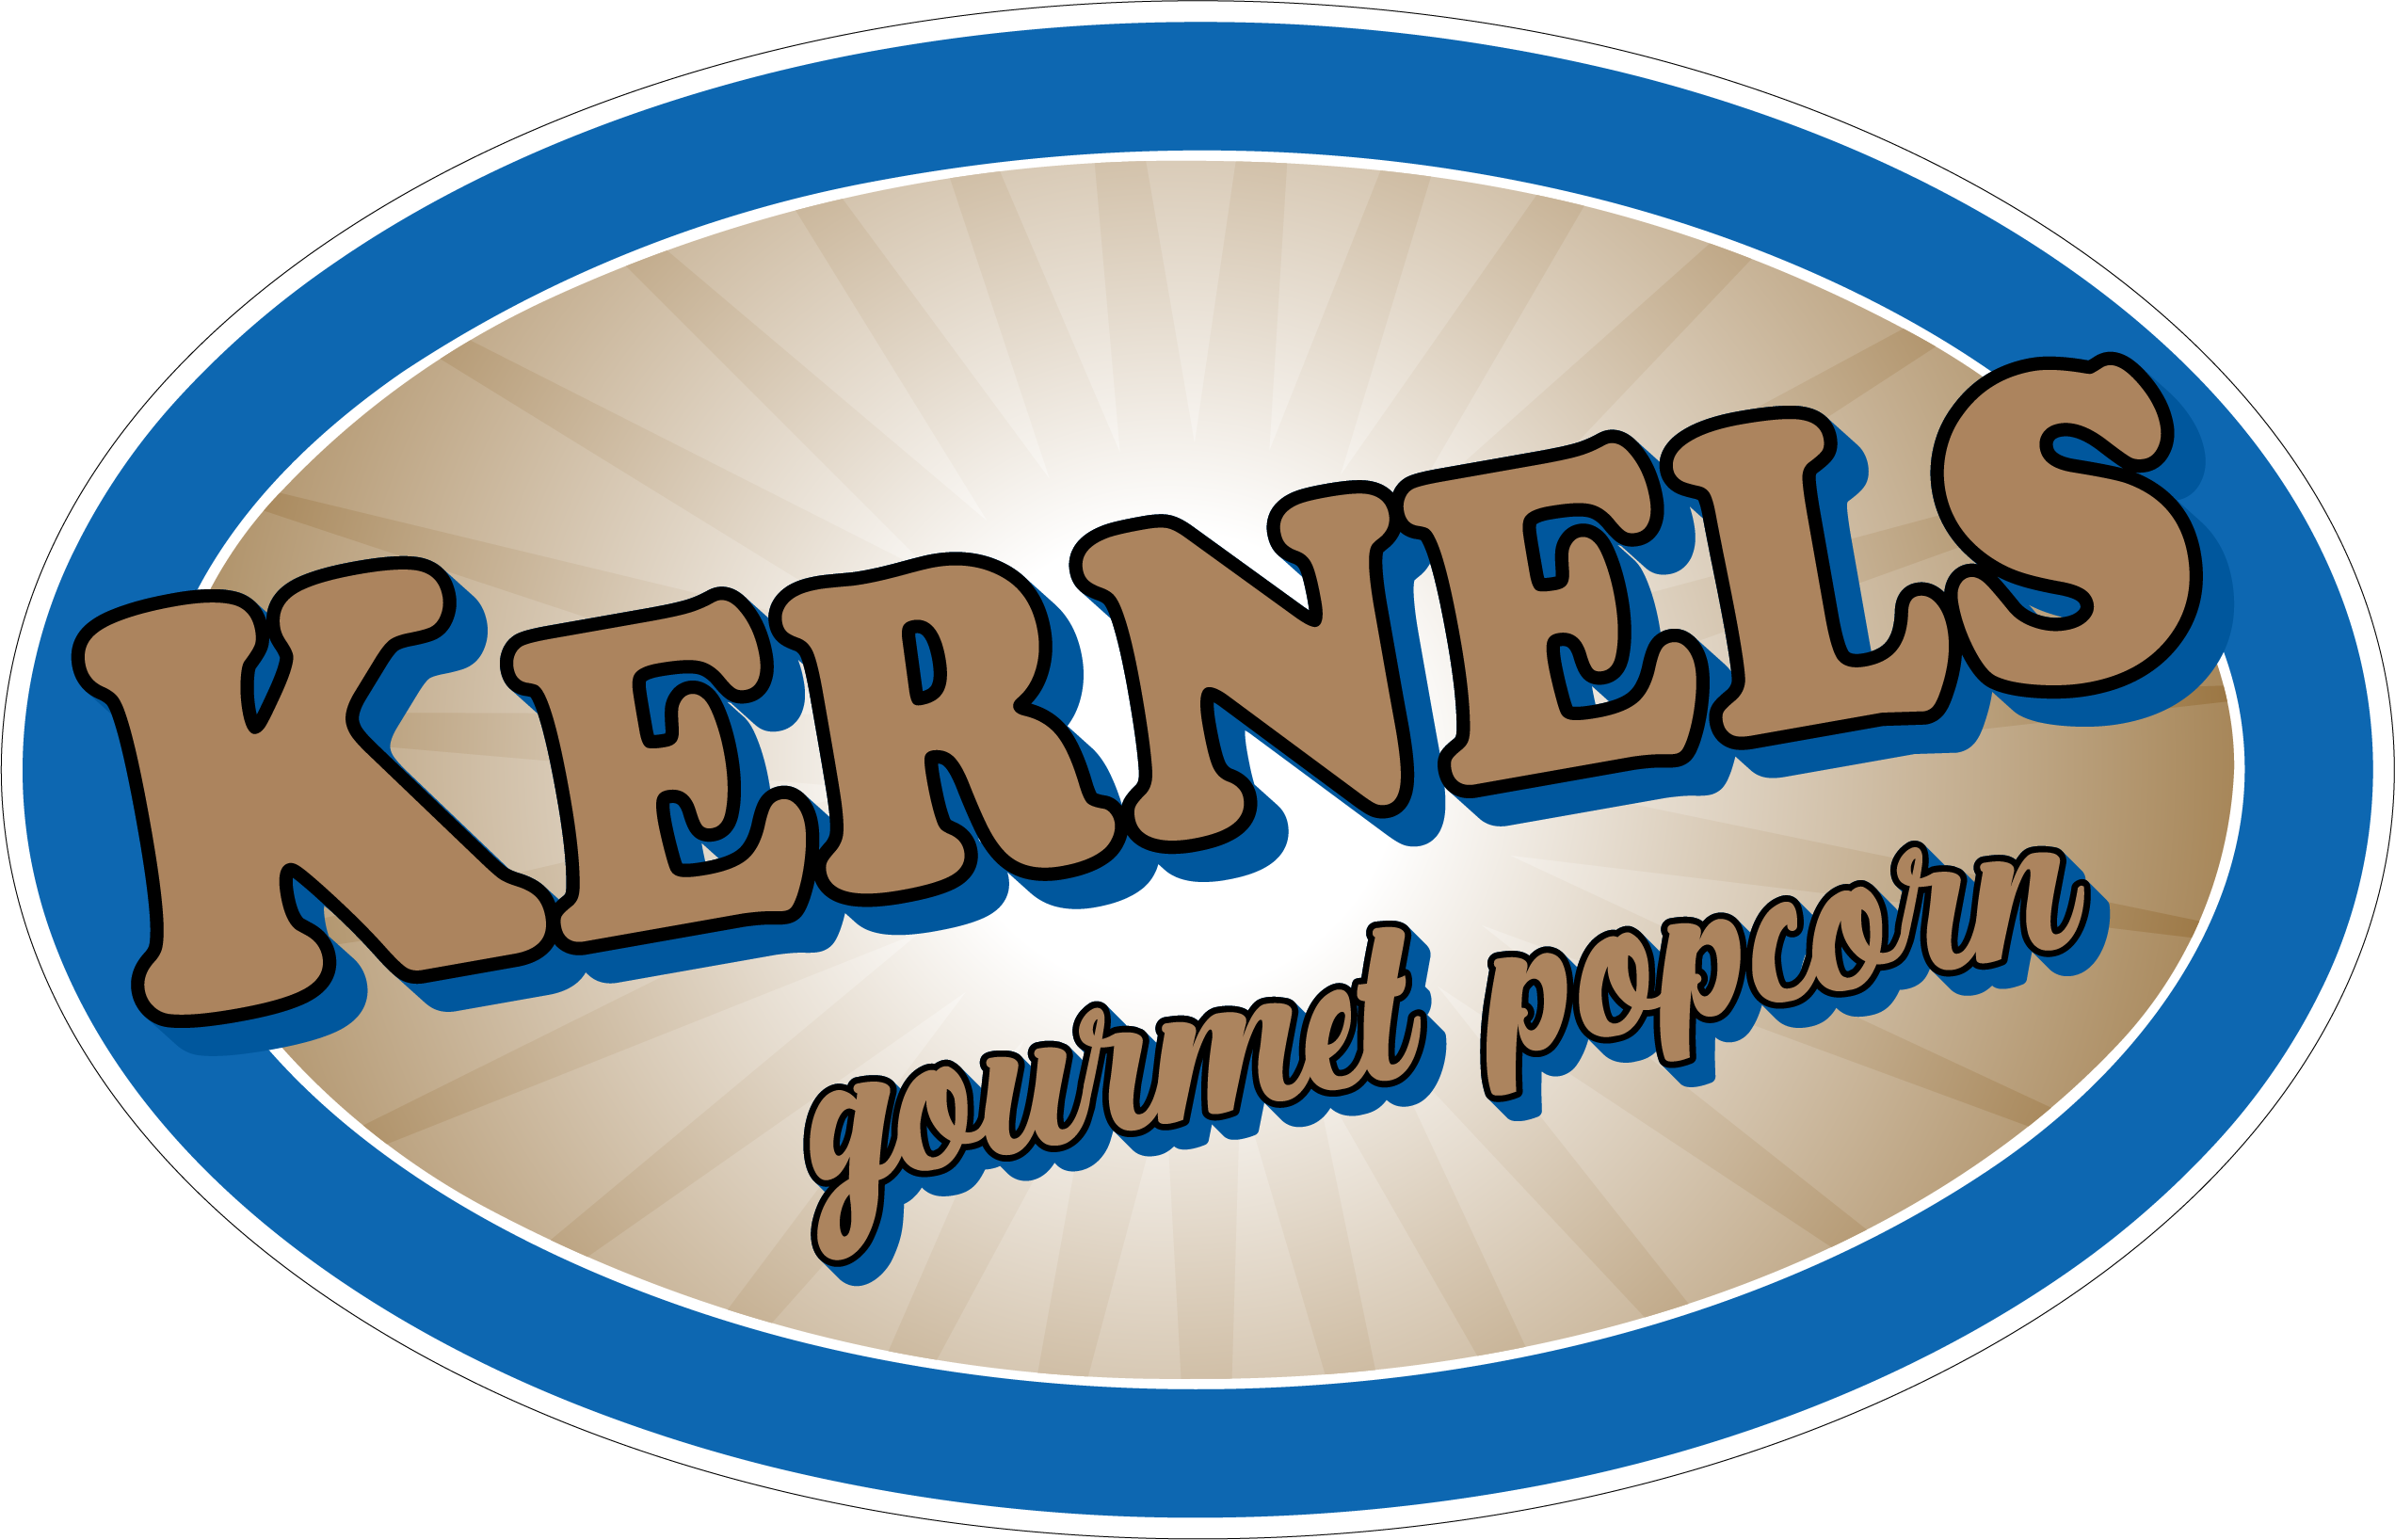 Kernels Gourmet Popcorn